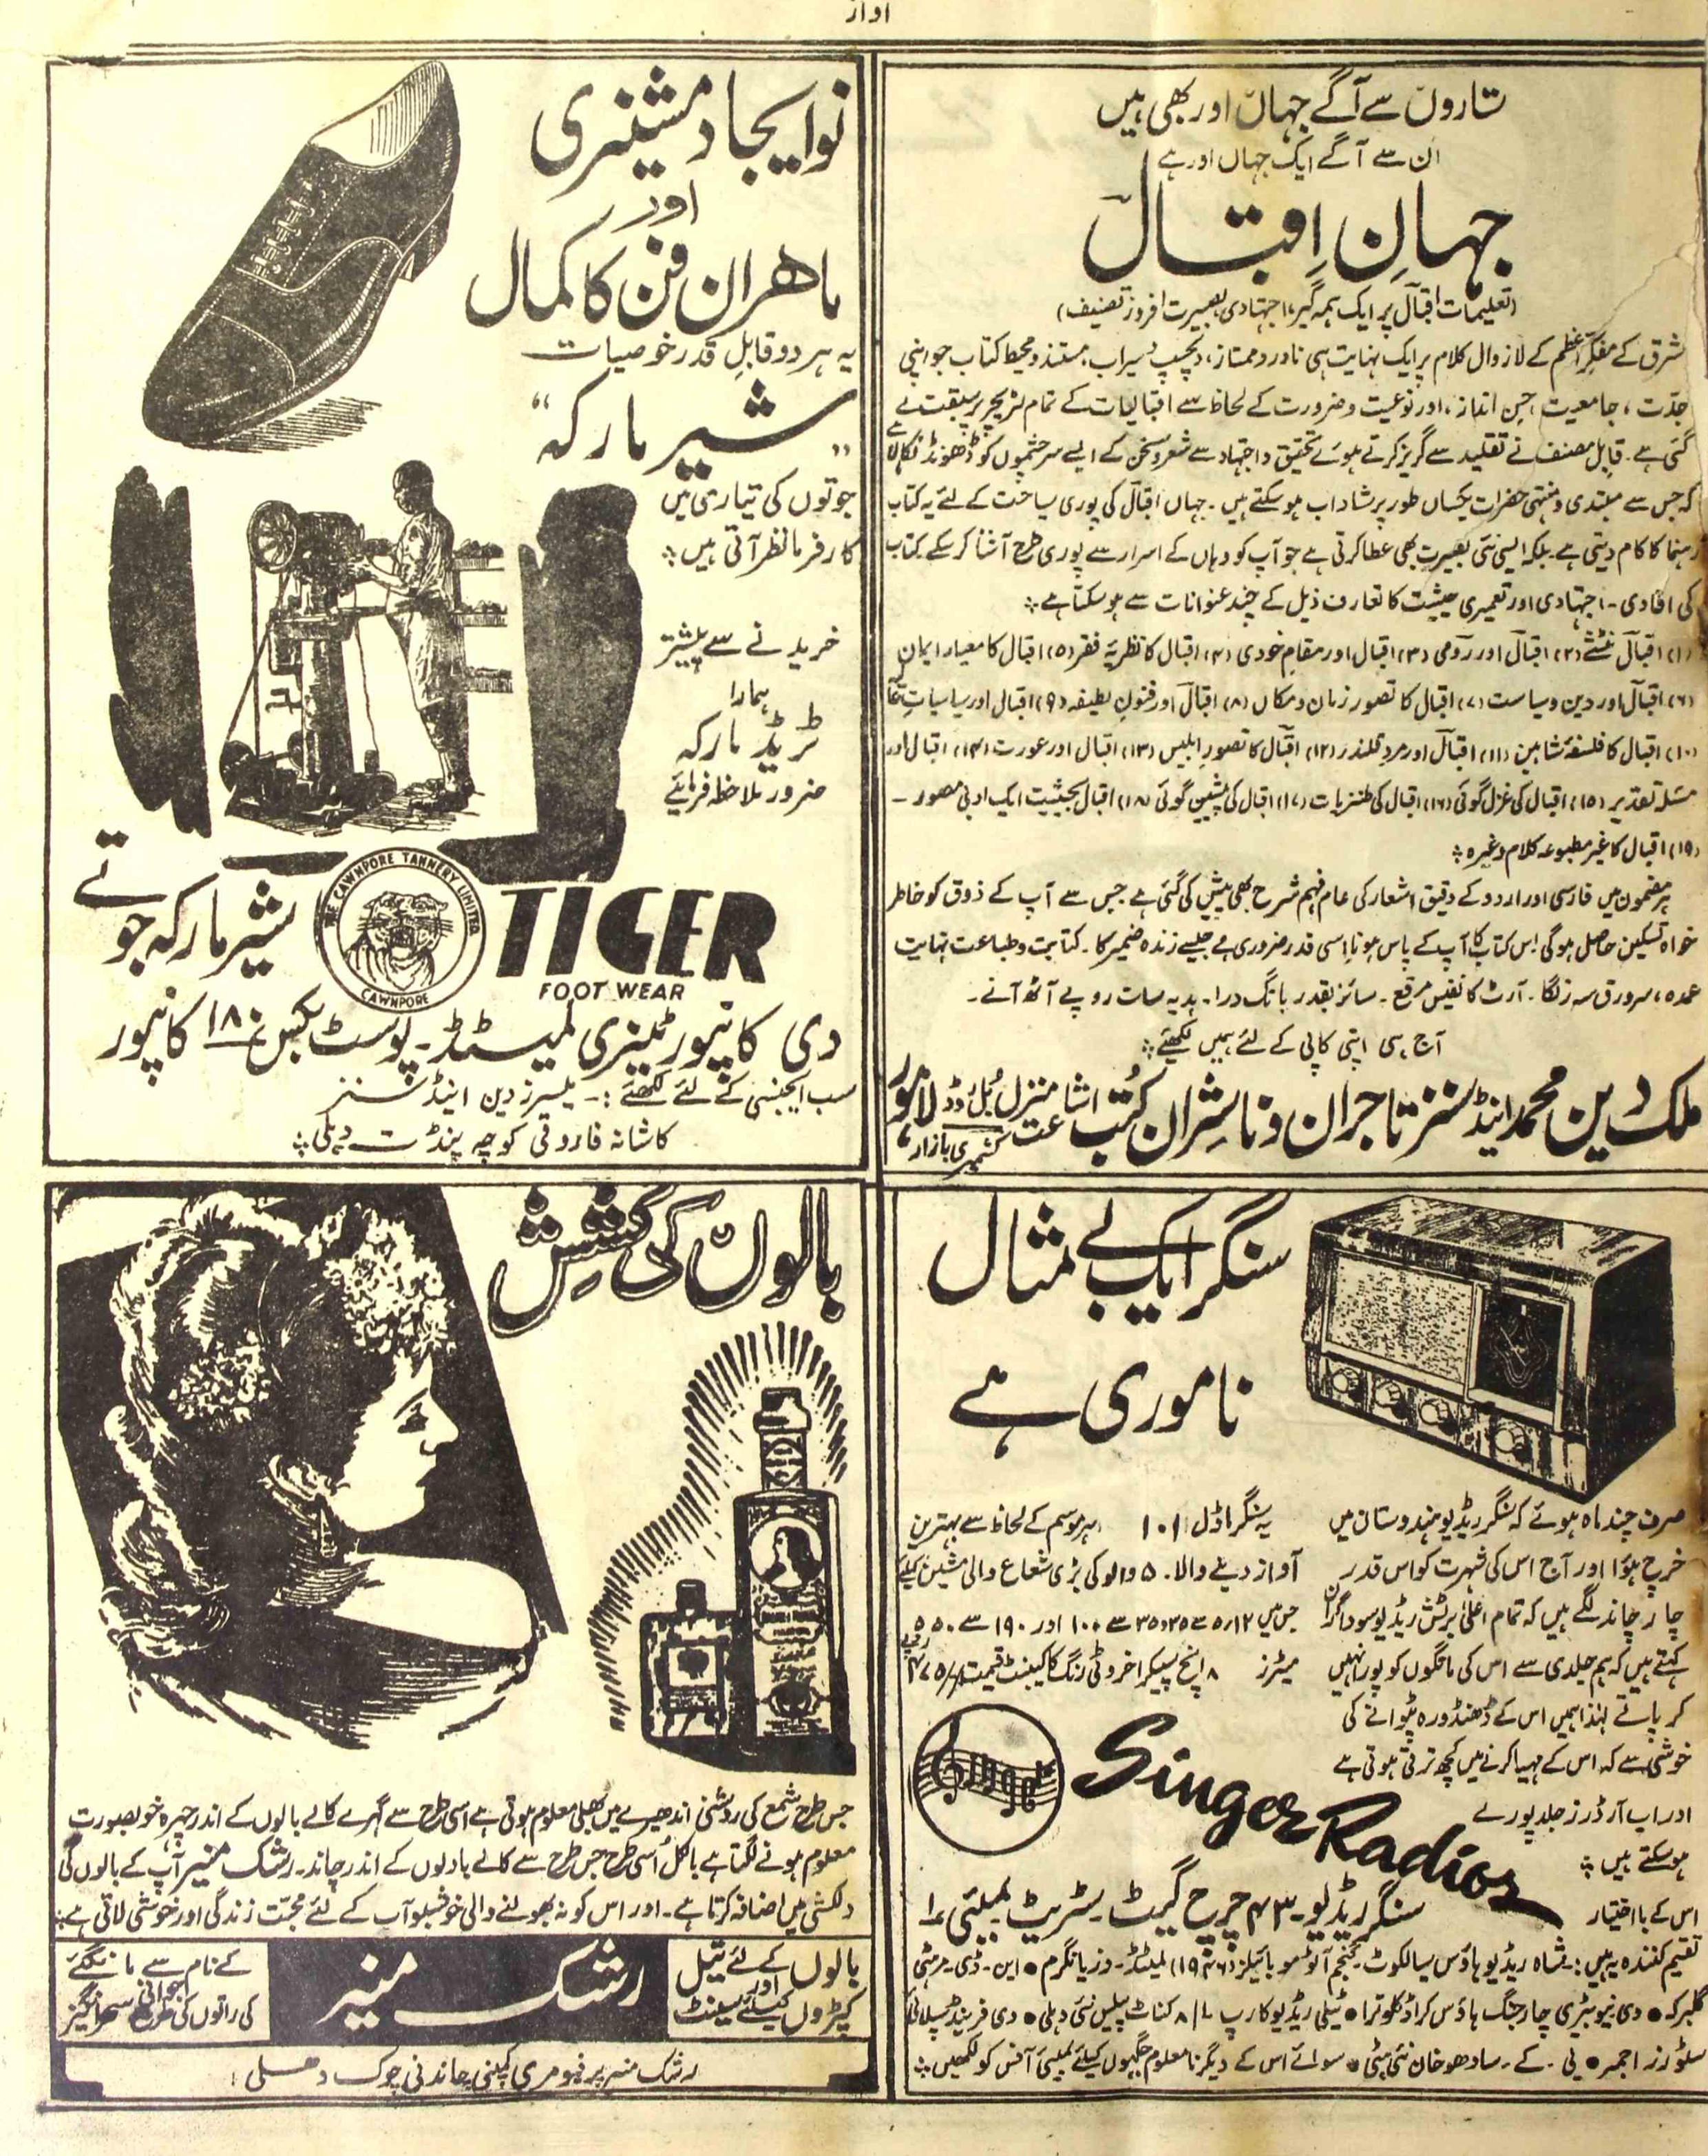 Awaz Jild 12 No 17 August 1947